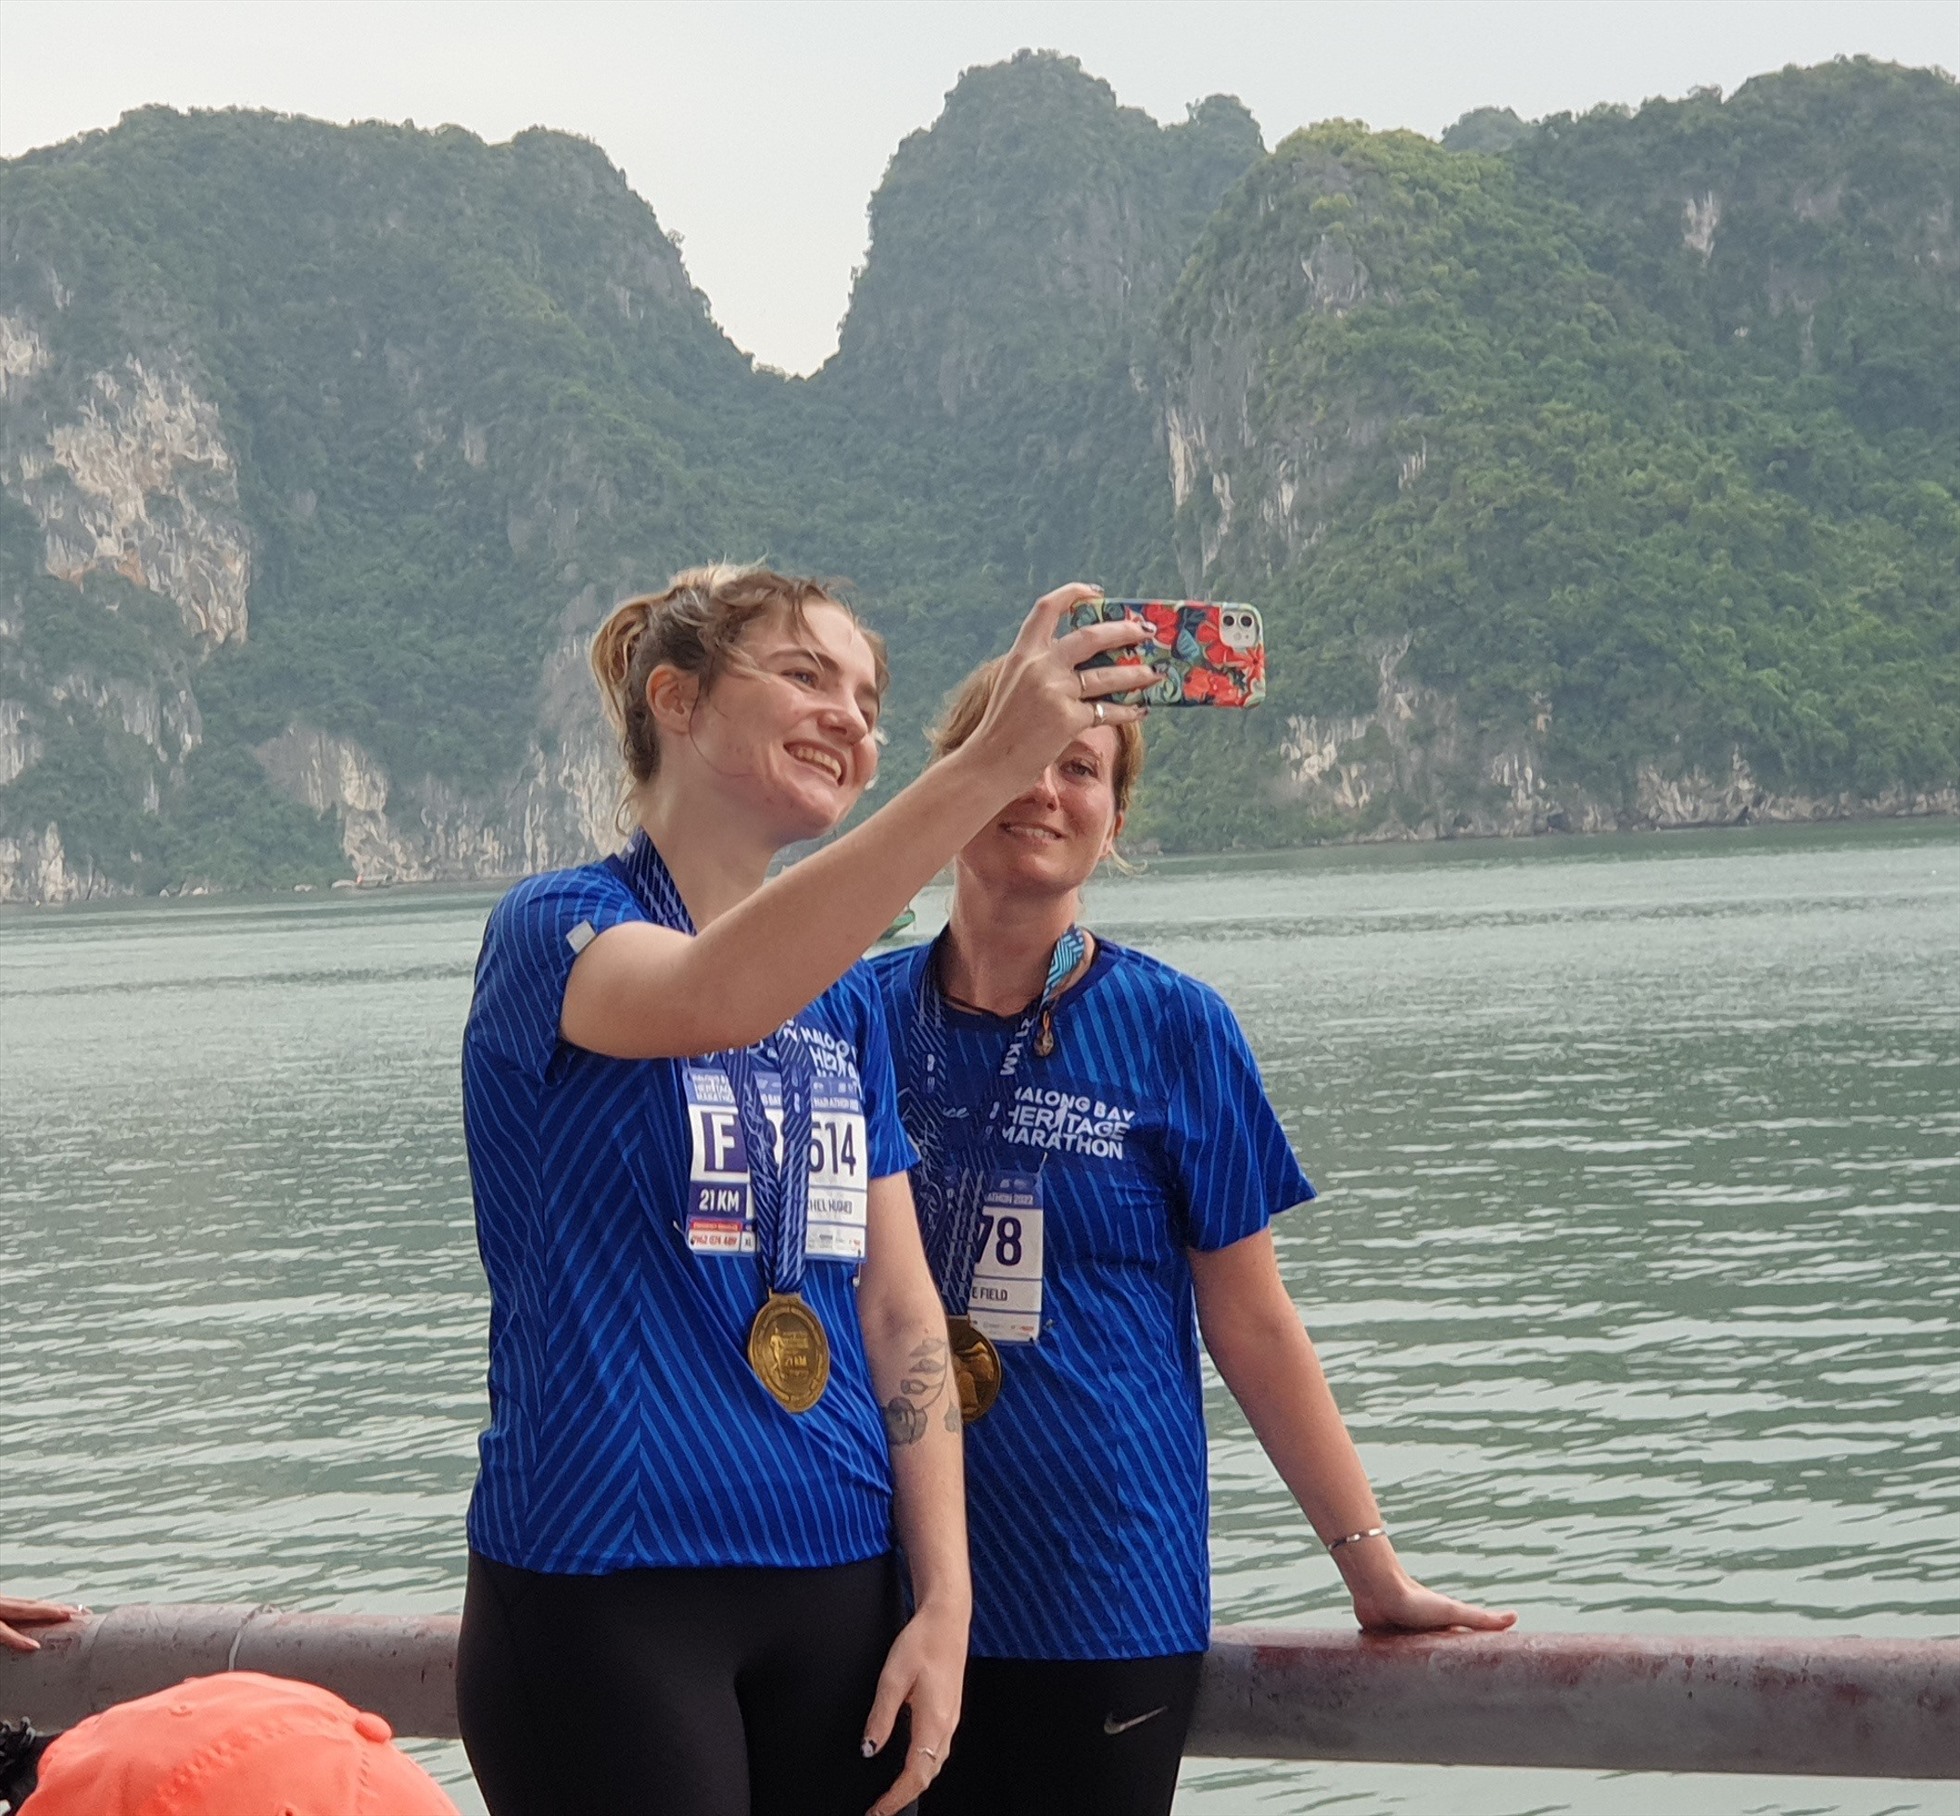 2 VĐV nước ngoài chụp ảnh bên bờ vịnh Hạ Long sau khi hoàn thành cuộc đua. Ảnh: Nguyễn Hùng